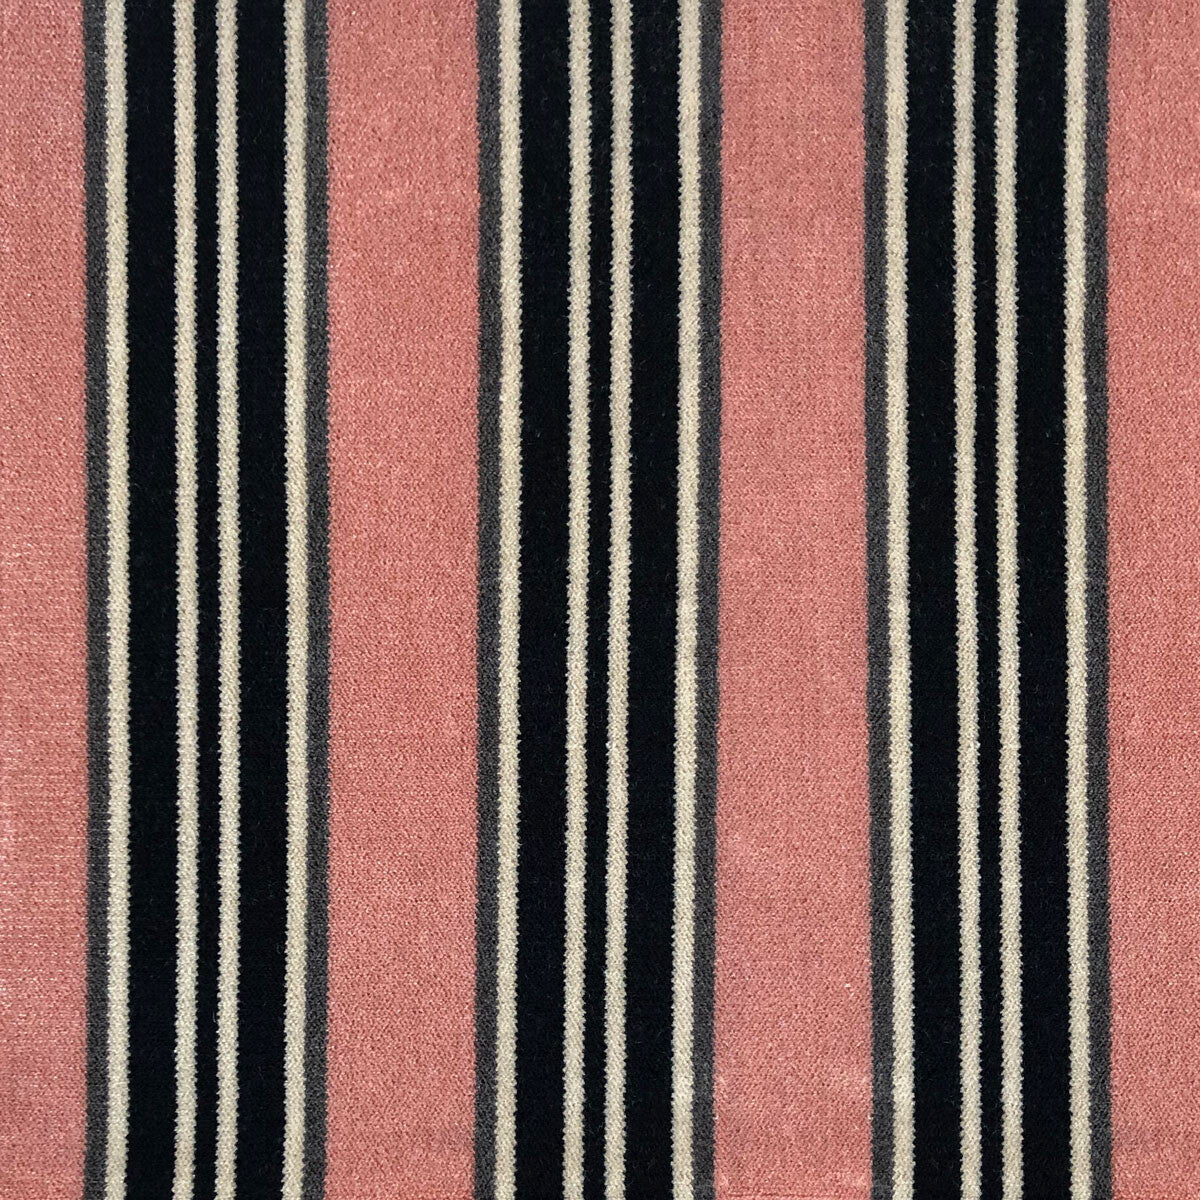 Tucha fabric in rosa color - pattern LCT1051.005.0 - by Gaston y Daniela in the Lorenzo Castillo VI collection